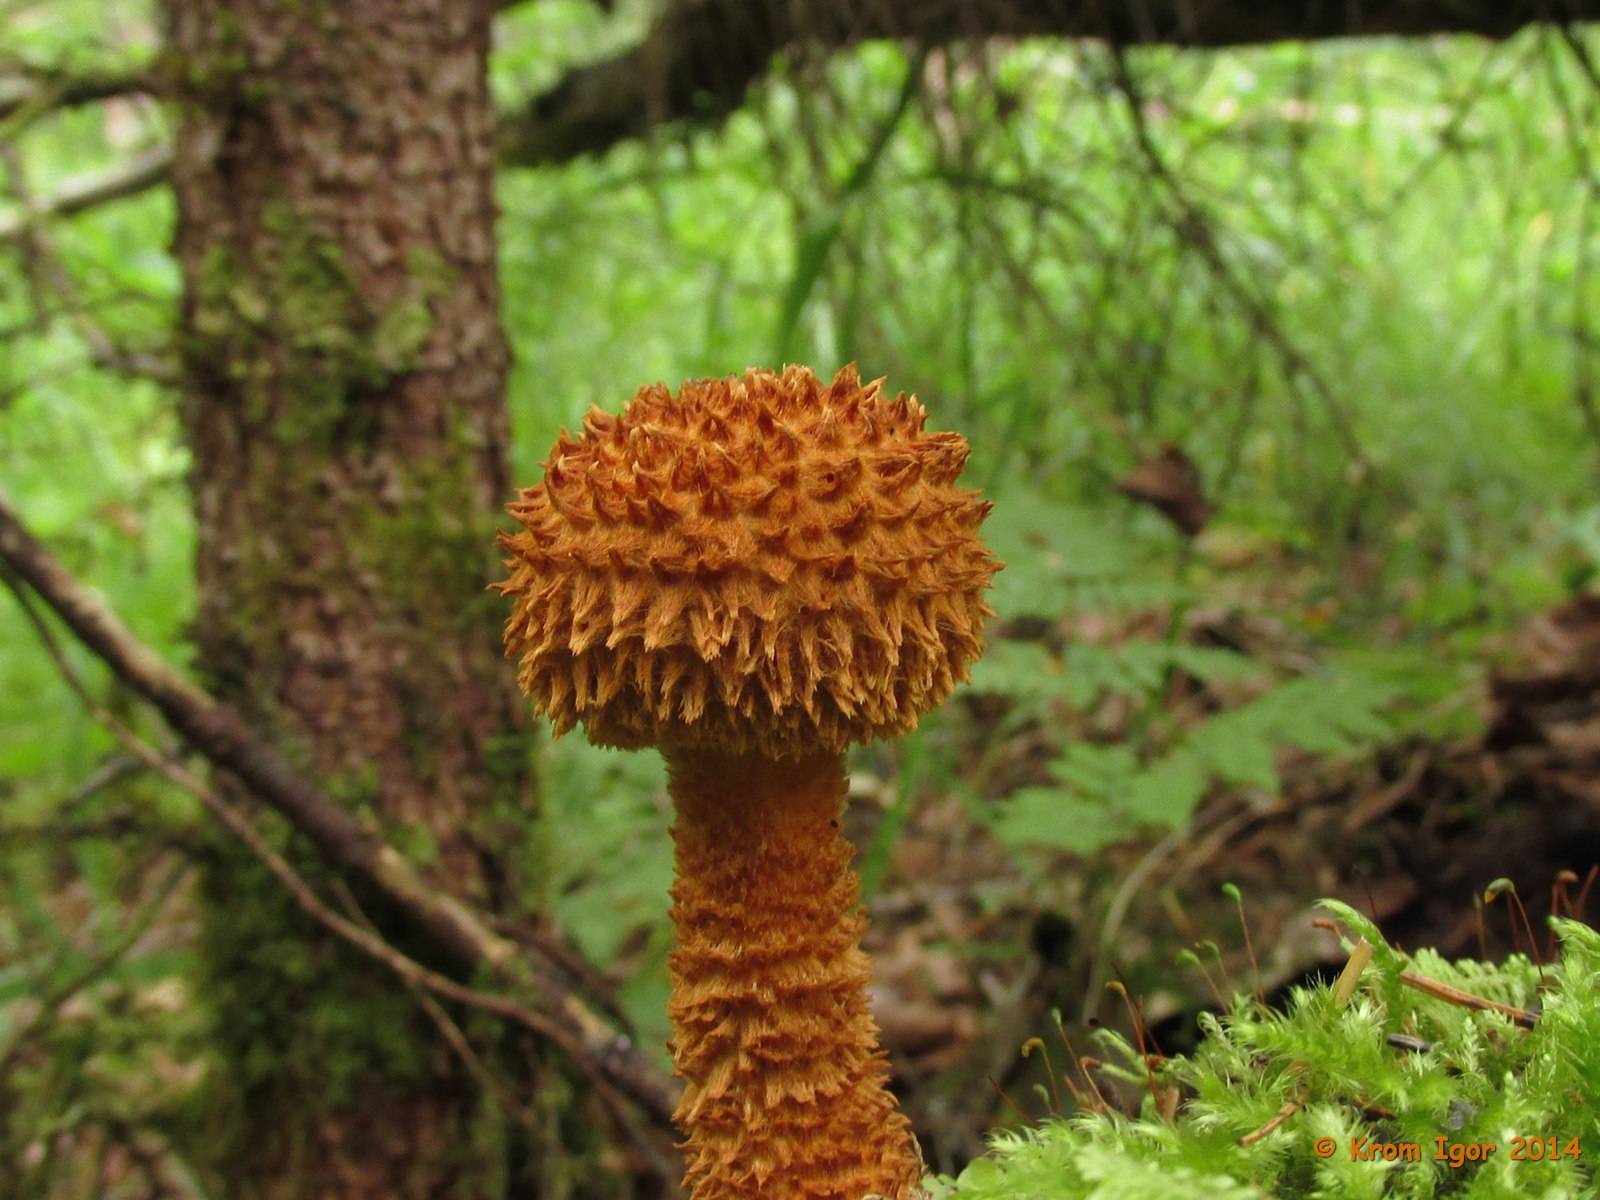 Чешуйница древесинная (лейкофолиота древесинная, leucopholiotalignicola): как выглядят грибы, где и как растут, съедобны или нет